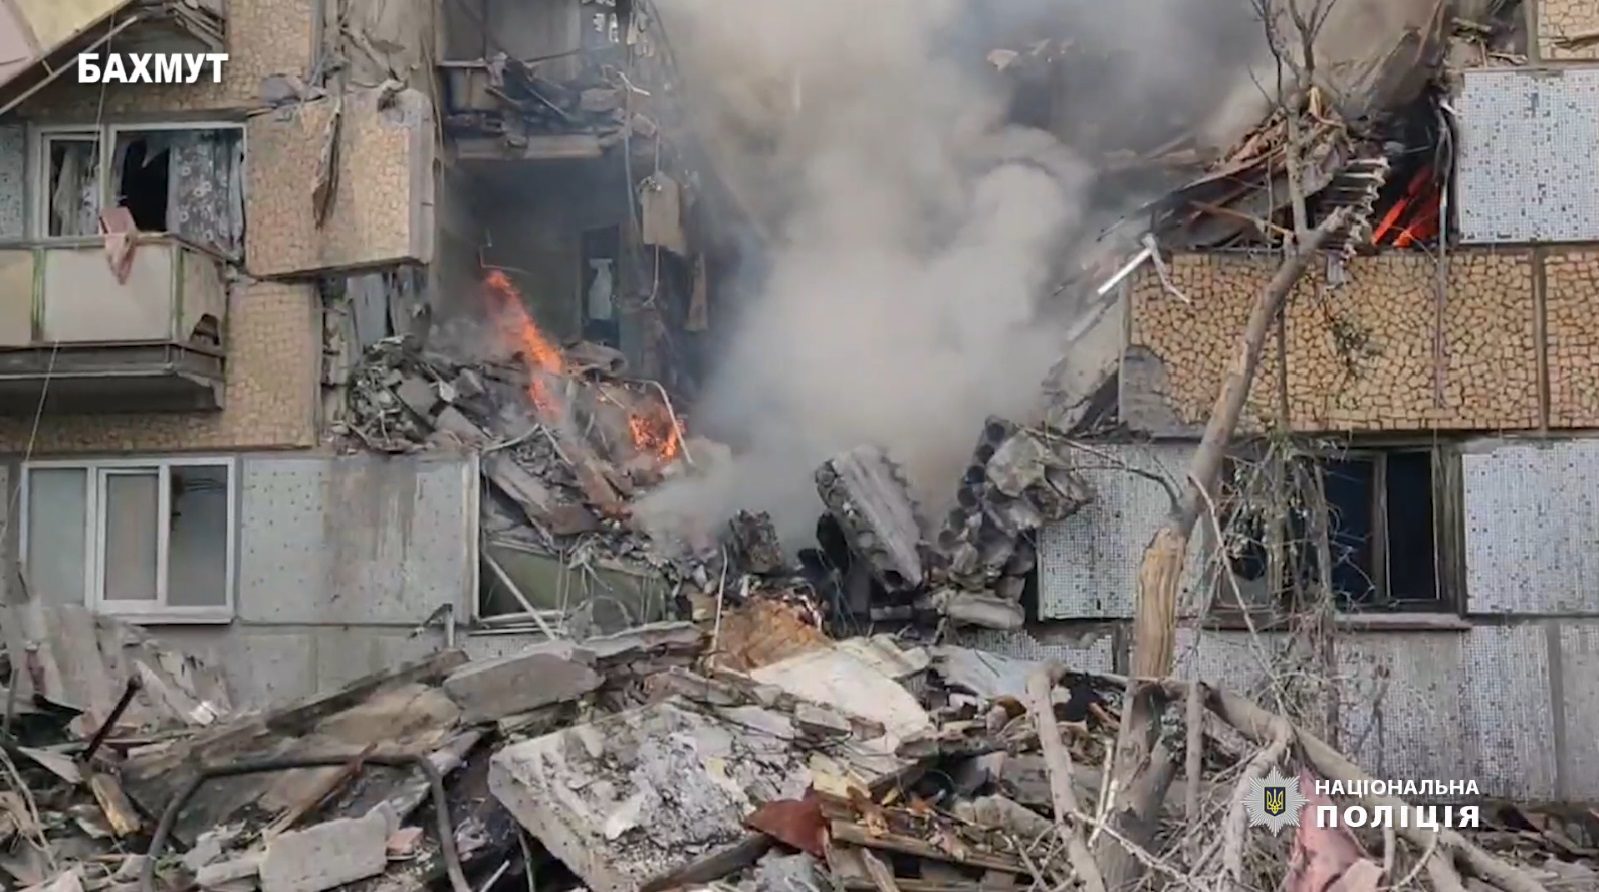 Еще один удар в Бахмуте: оккупанты разрушили многоэтажку, погибла женщина. Среди раненых ребенок 5